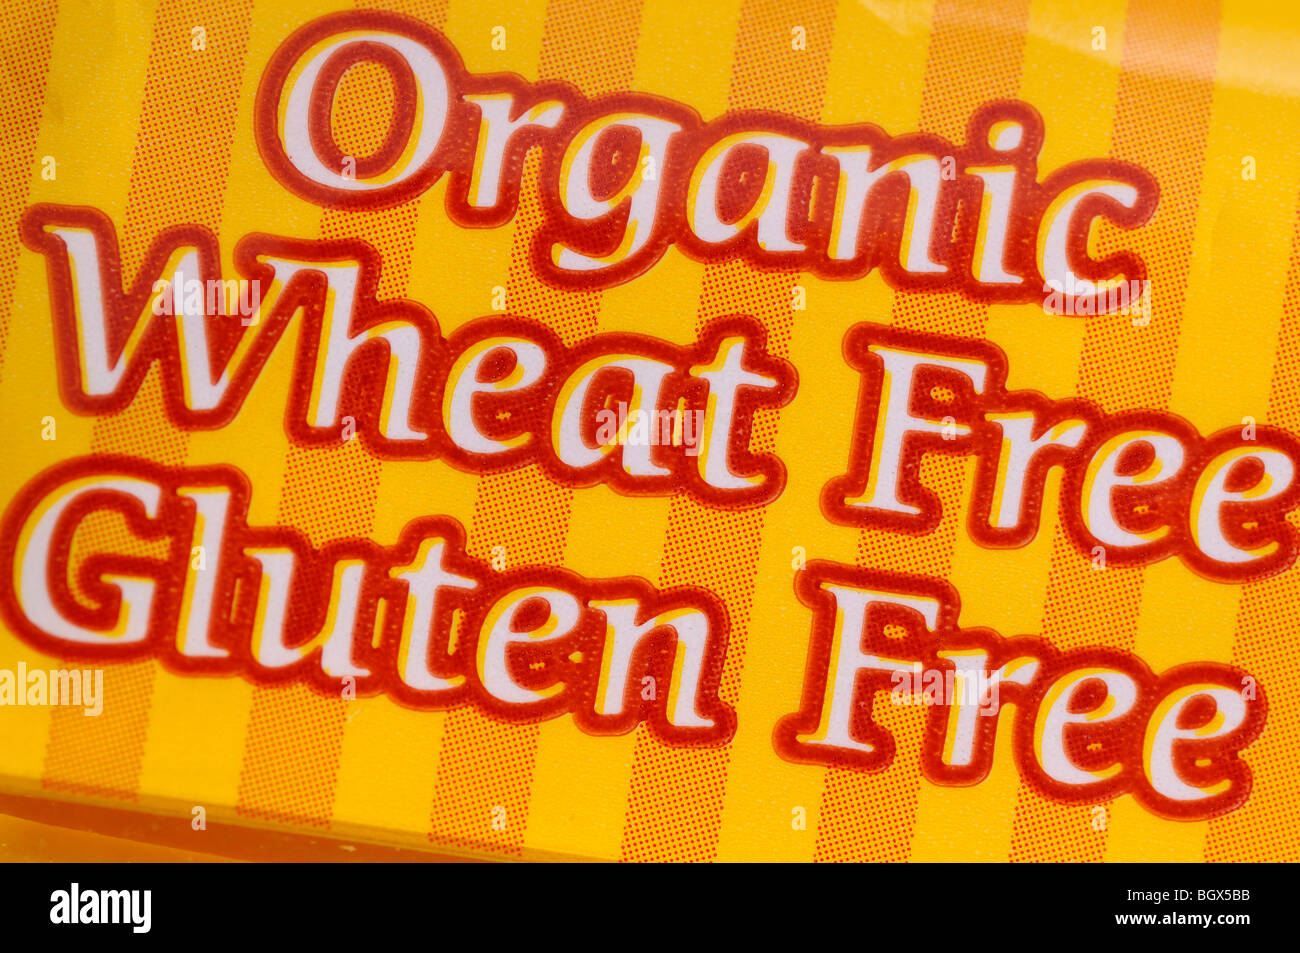 Paquete de trigo orgánico y comida sin gluten por restricción dietética de intolerancia de gluten alergia Foto de stock